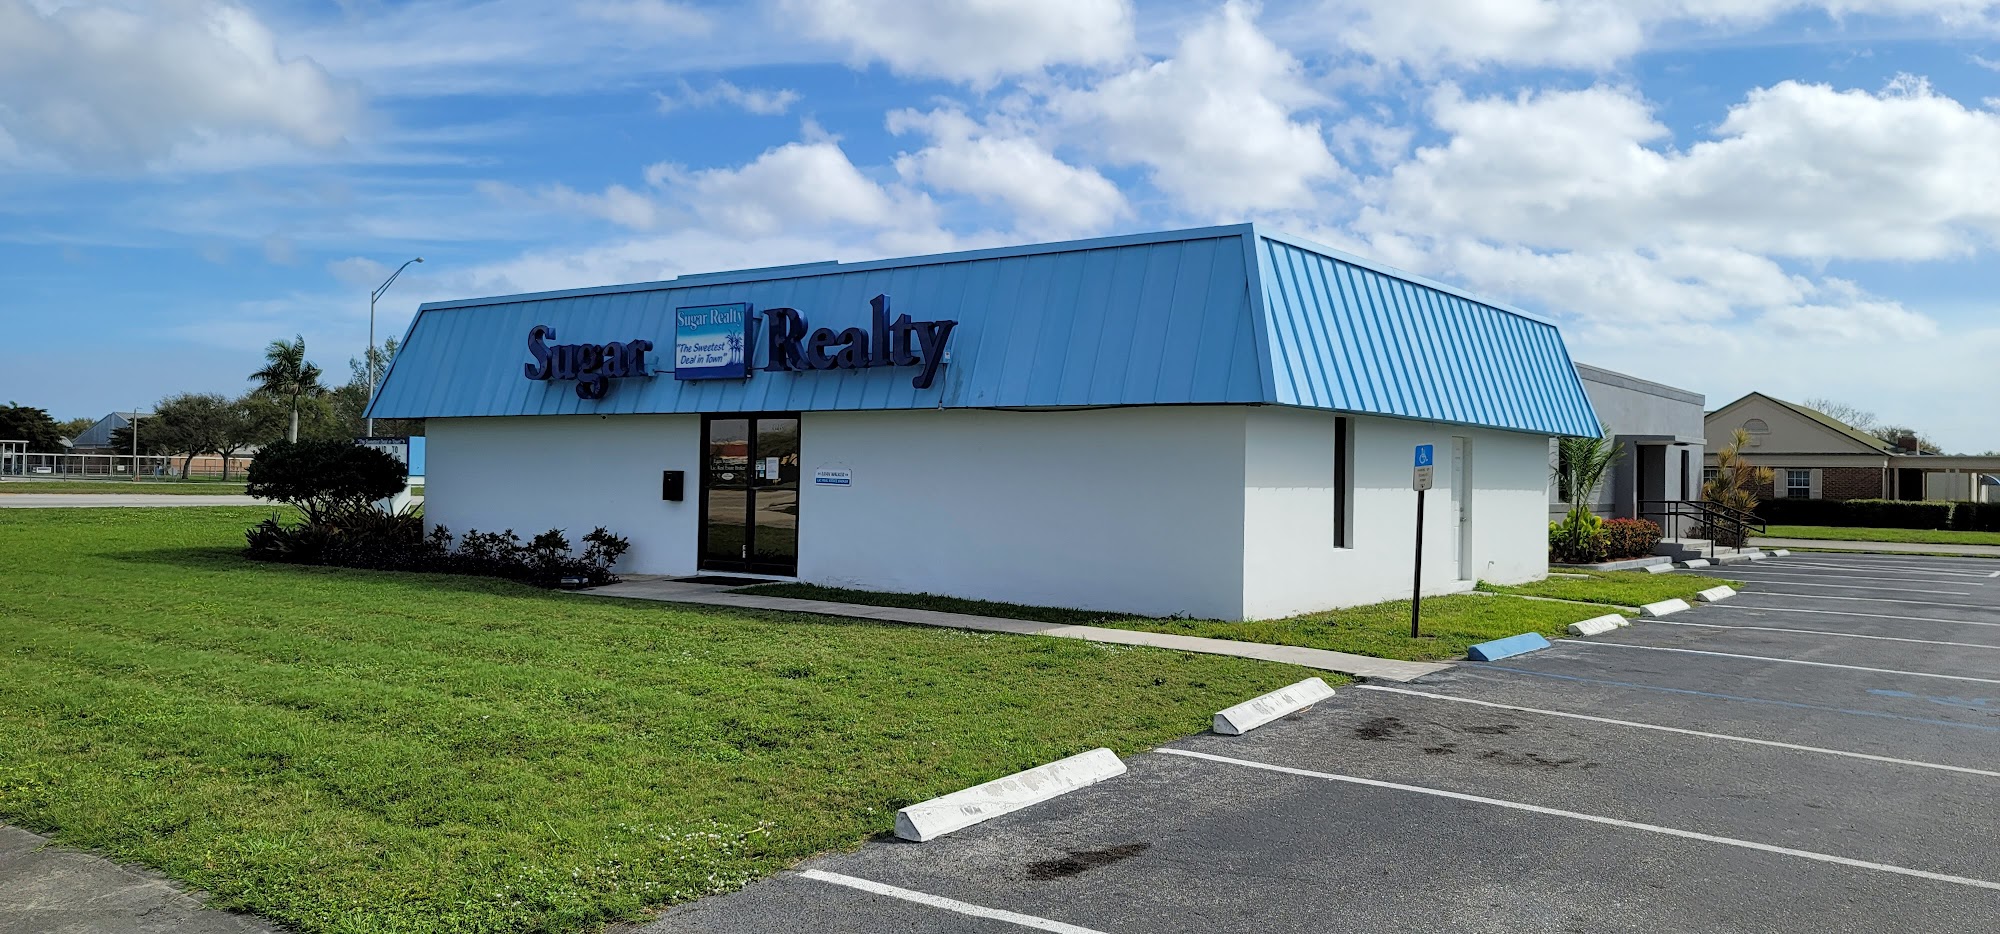 Sugar Realty Inc. 626 W Sugarland Hwy #4, Clewiston Florida 33440